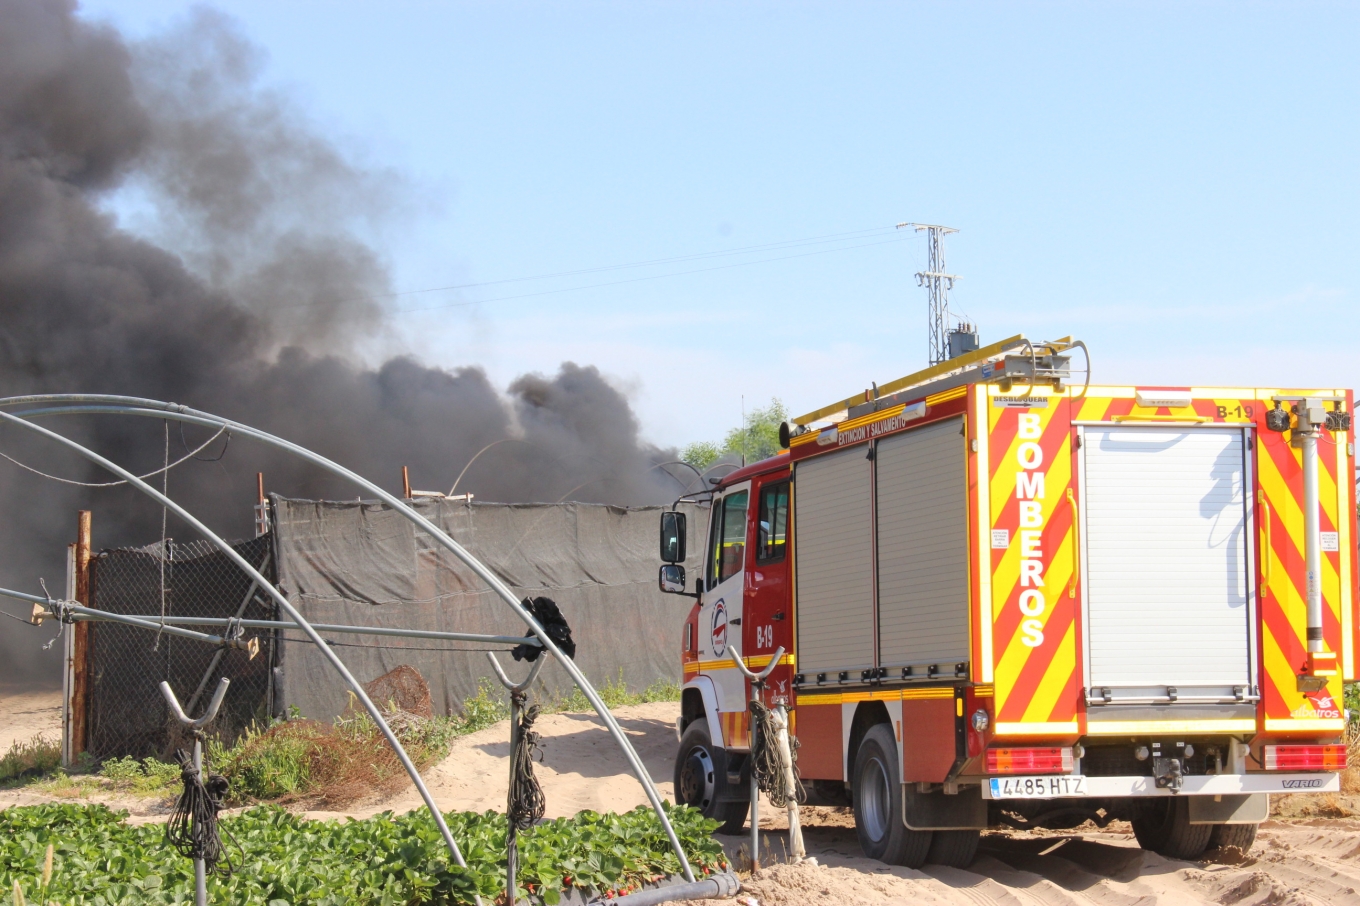 El CPBH interviene en el incendio de un asentamiento chabolista en Lepe